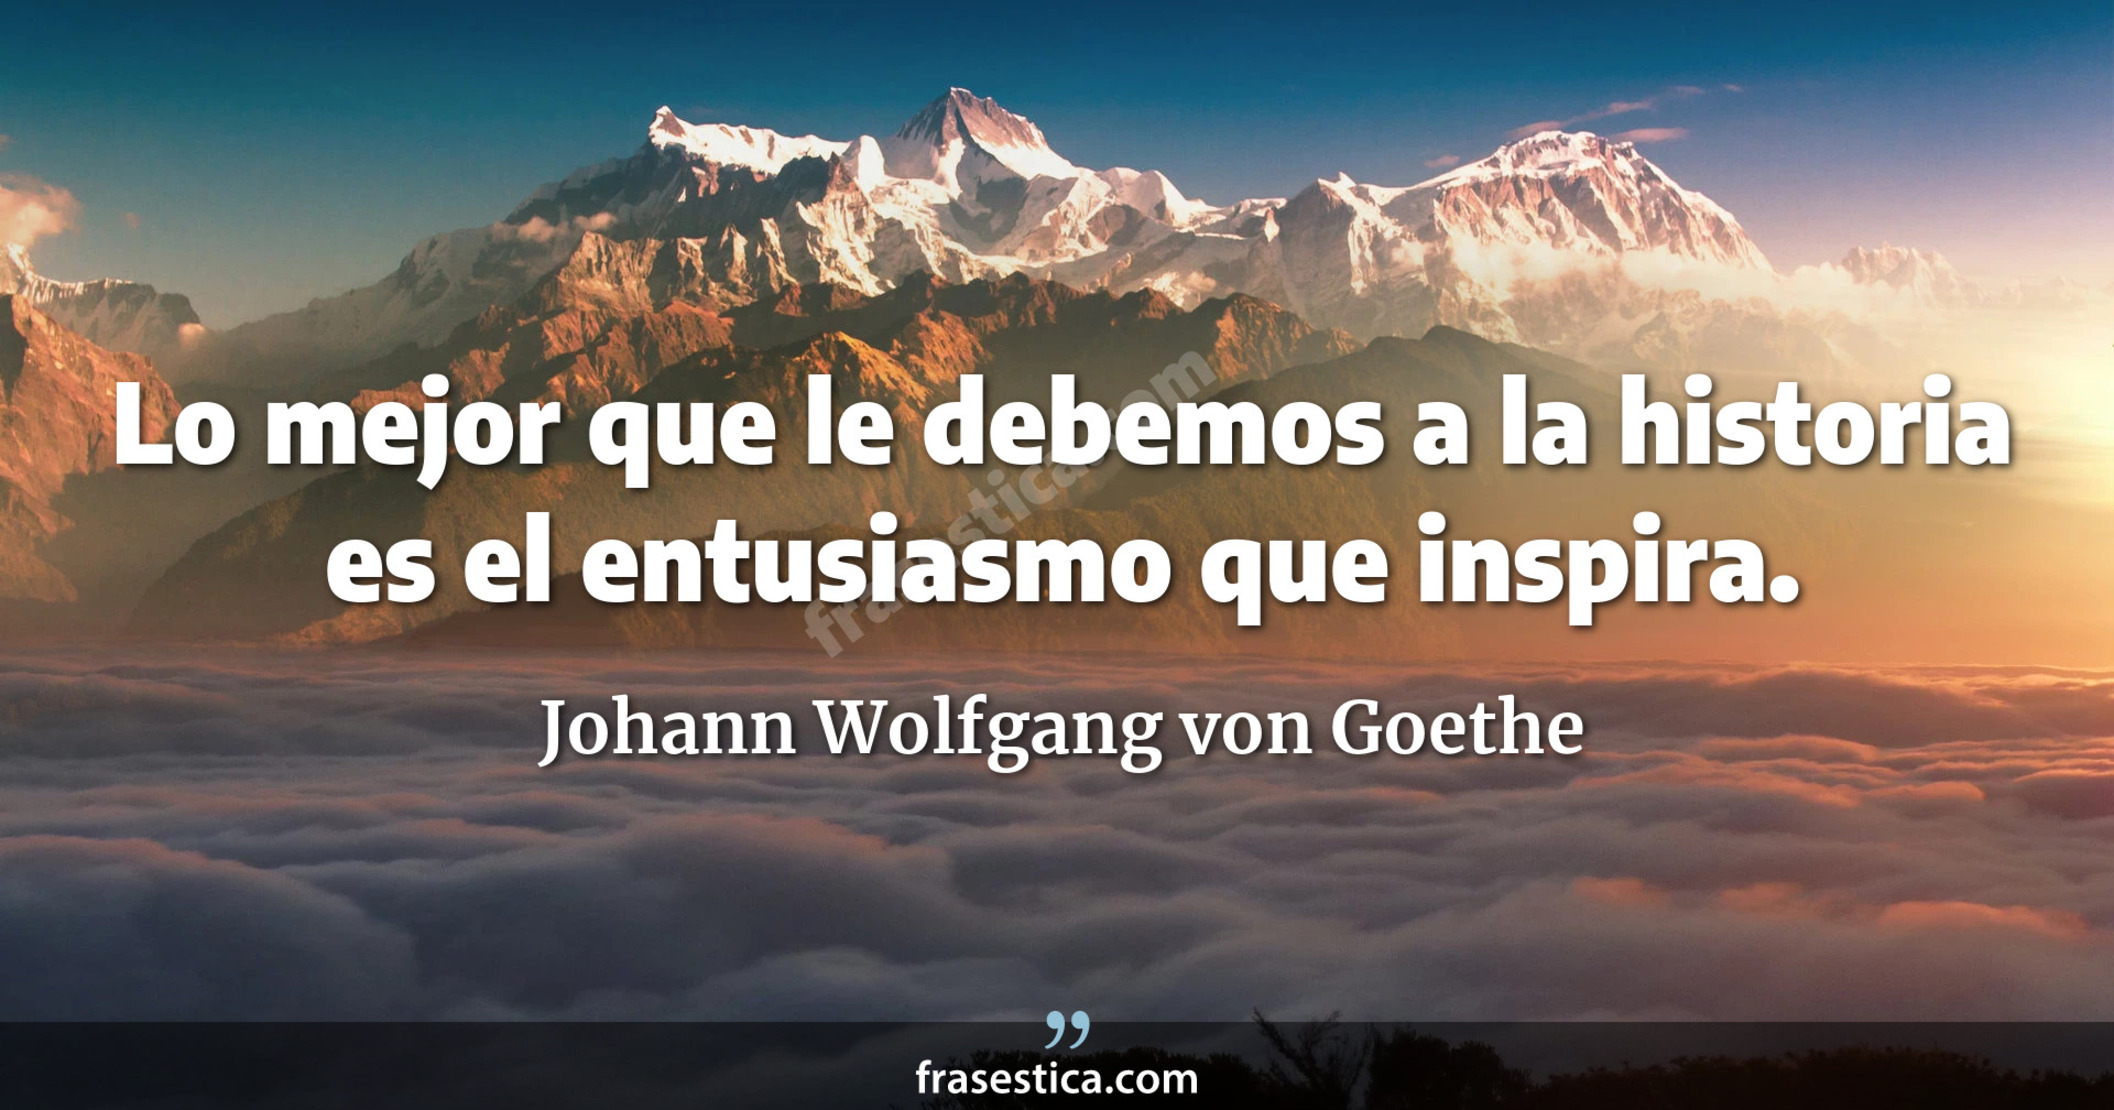 Lo mejor que le debemos a la historia es el entusiasmo que inspira. - Johann Wolfgang von Goethe